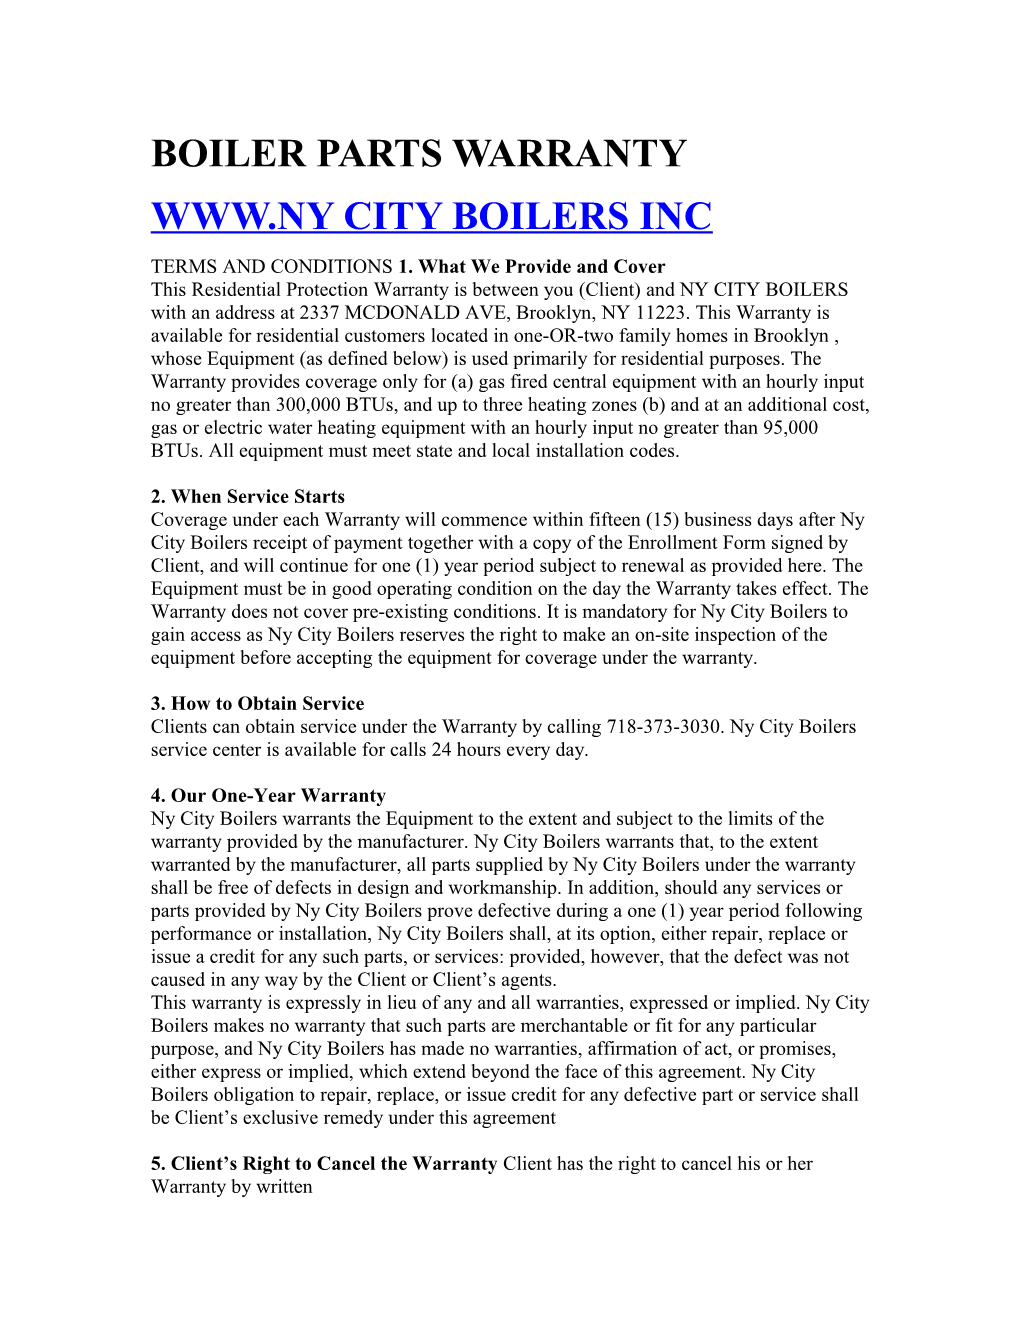 Boiler Parts Warranty